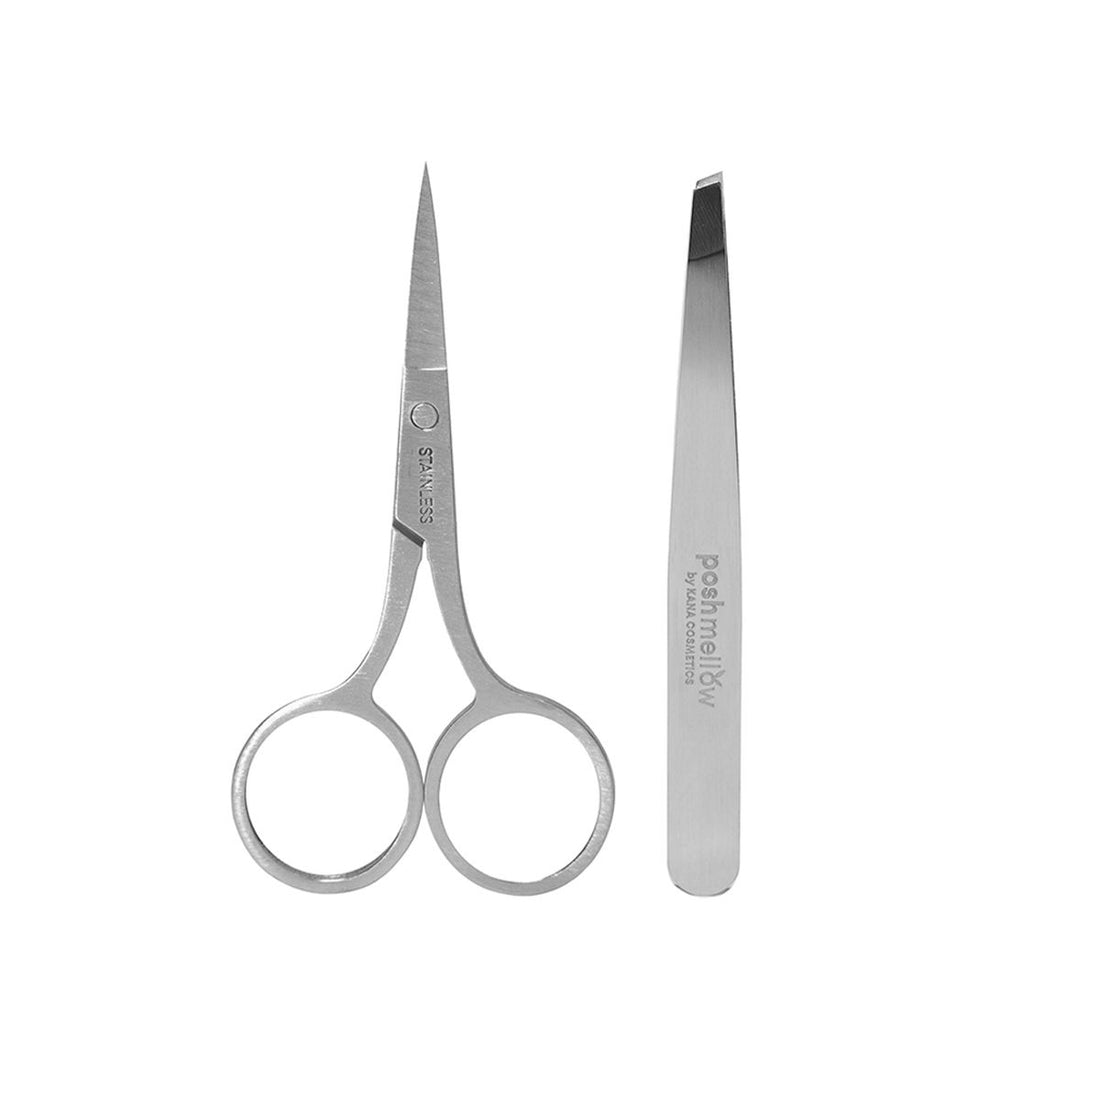 Eyebrow Scissors and Tweezers Set by Poshmellow